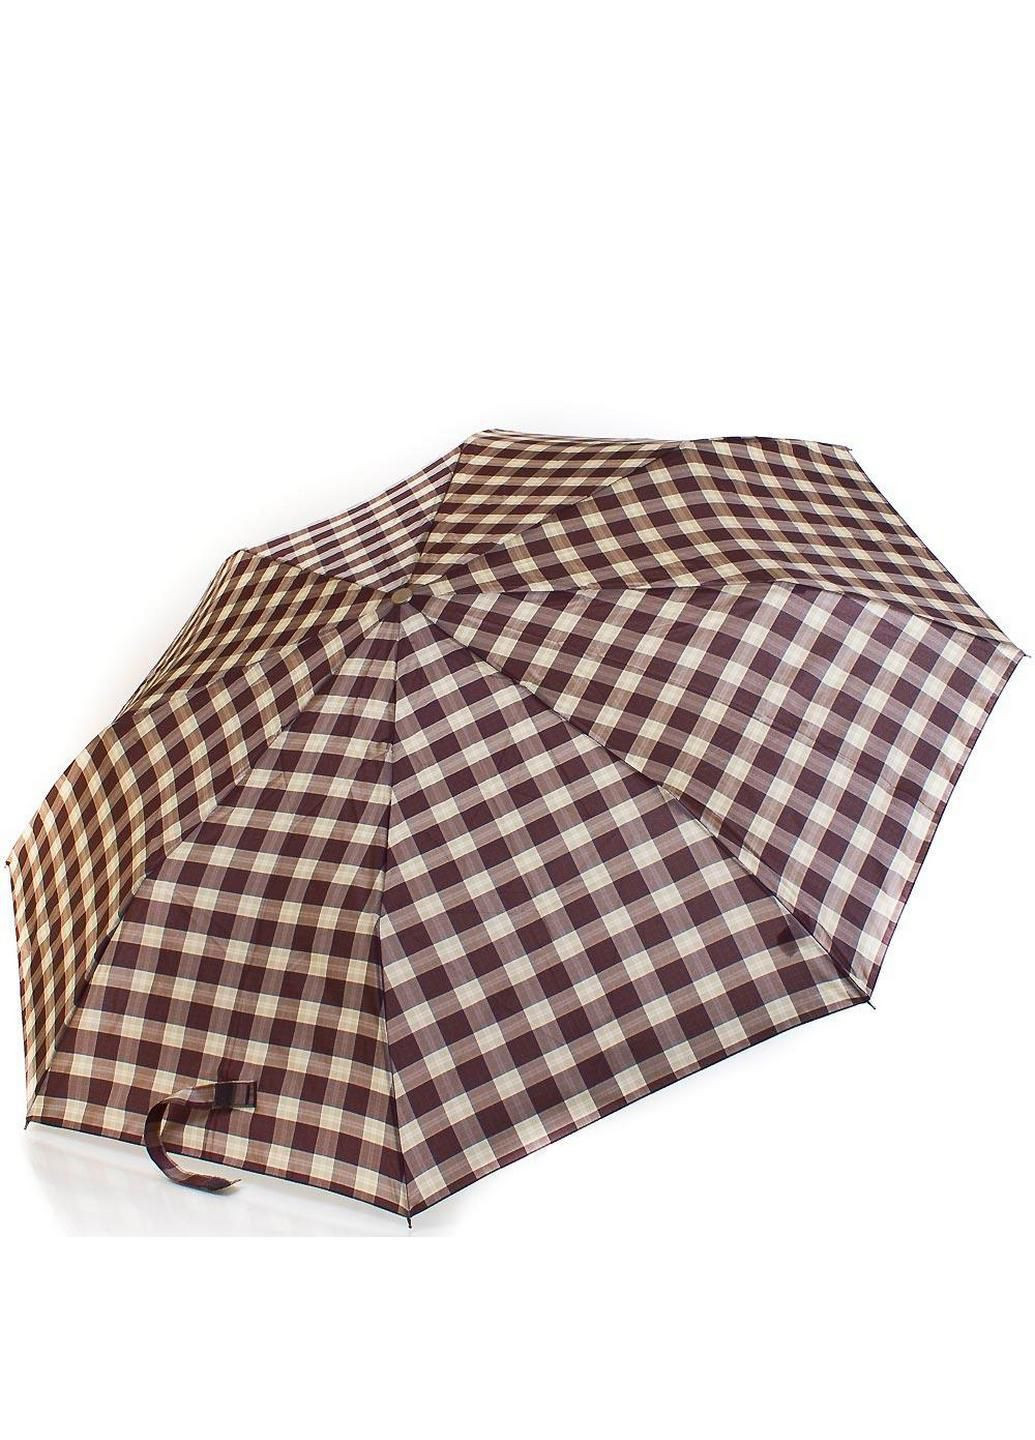 Складной зонт полуавтомат 106 см Zest (197766426)